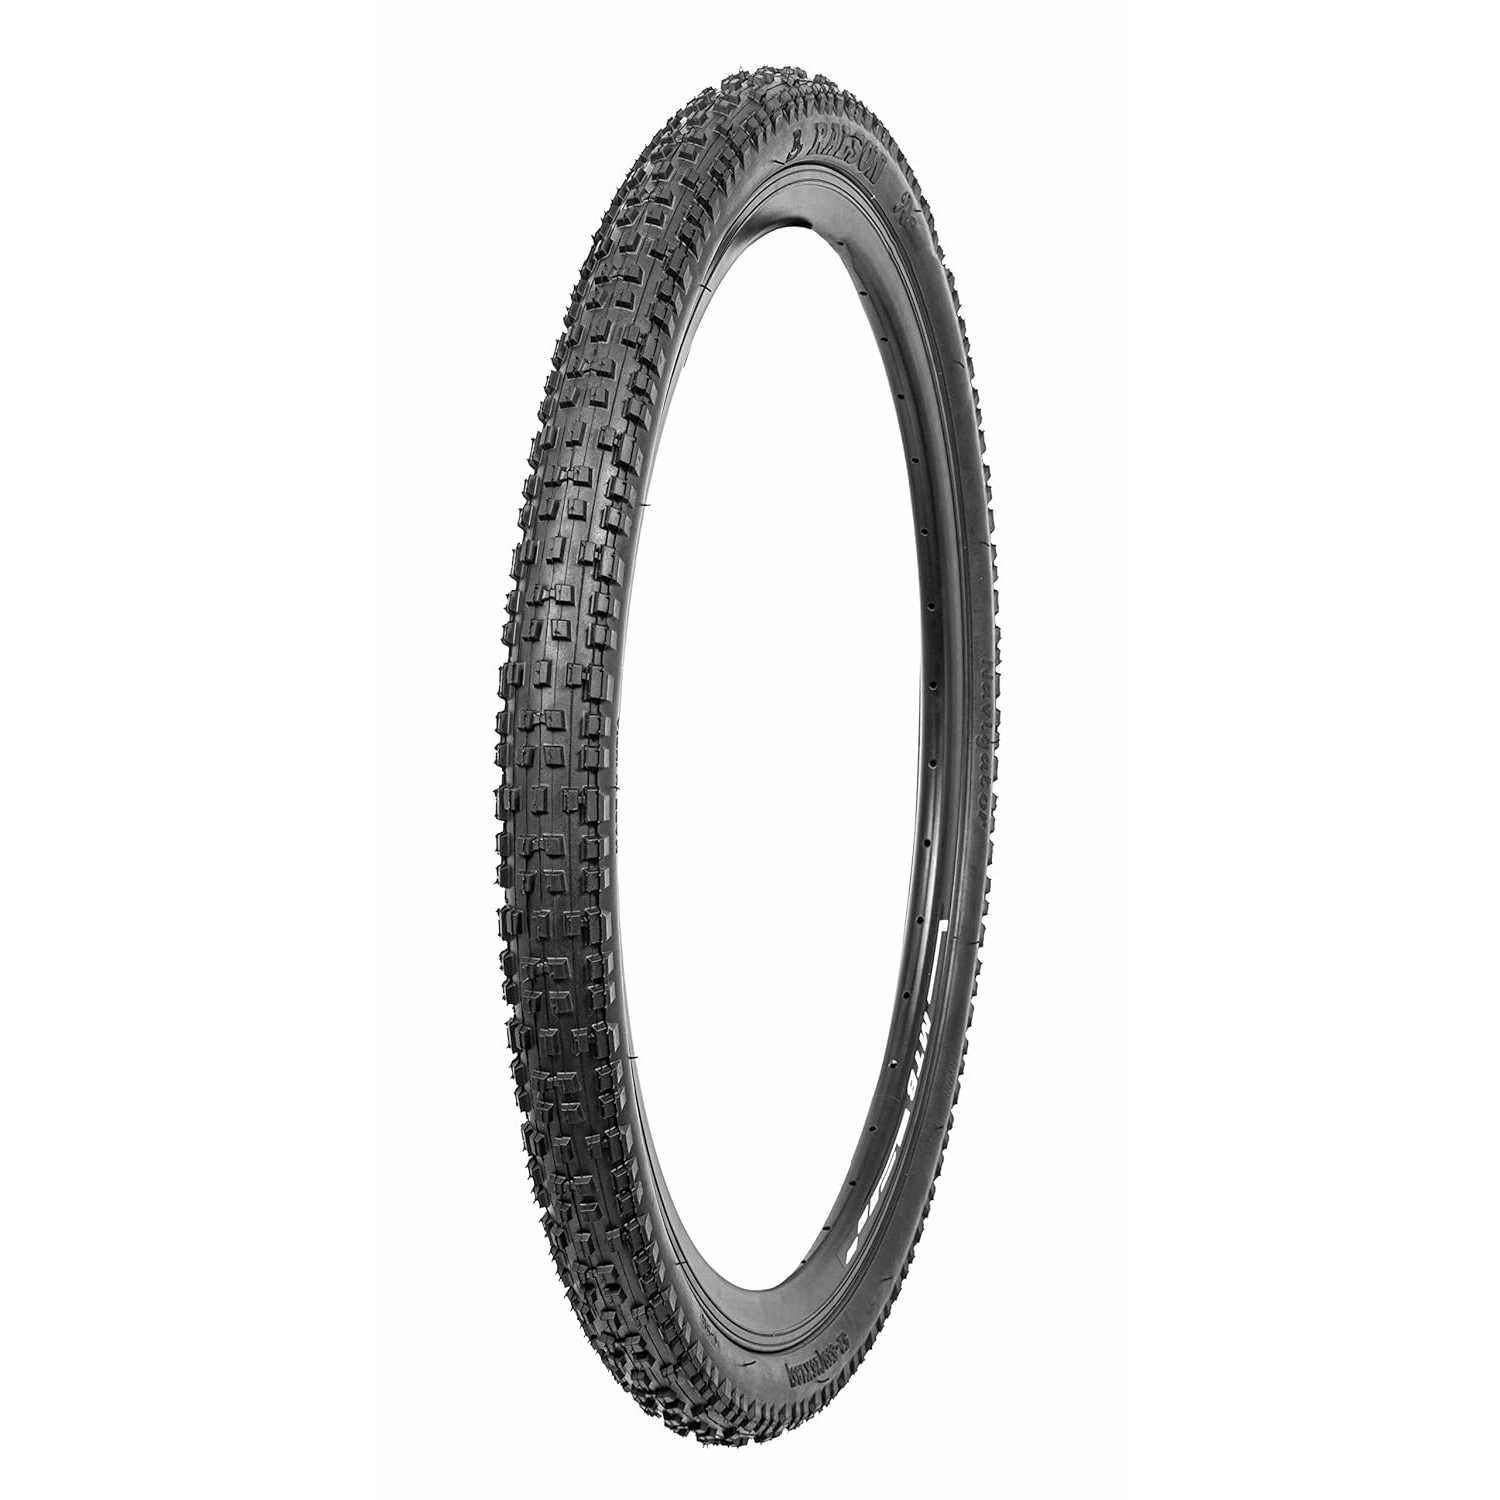 Външна гума за велосипед NAVIGATOR 24x2.40 (62-507) Защита от спукване